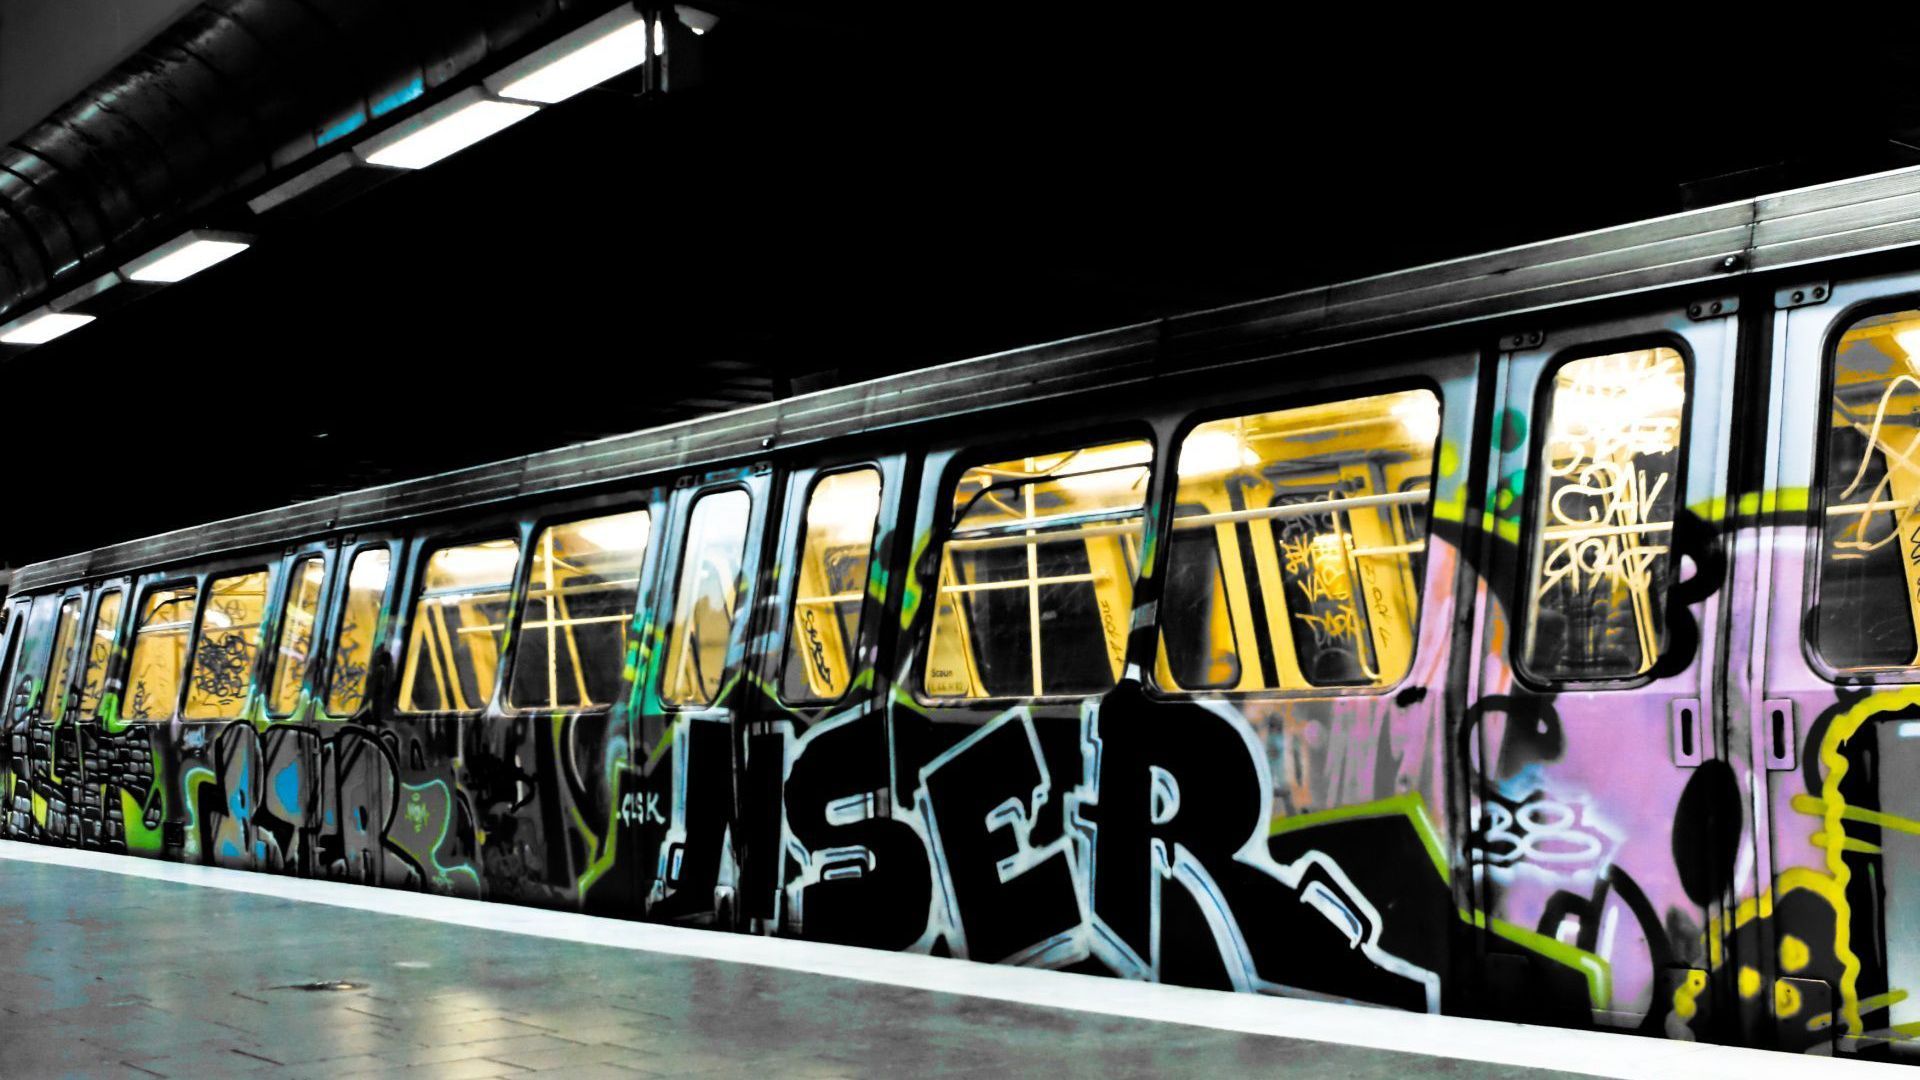 Train Graffiti HD Wallpaper 1920x1080 ID31749